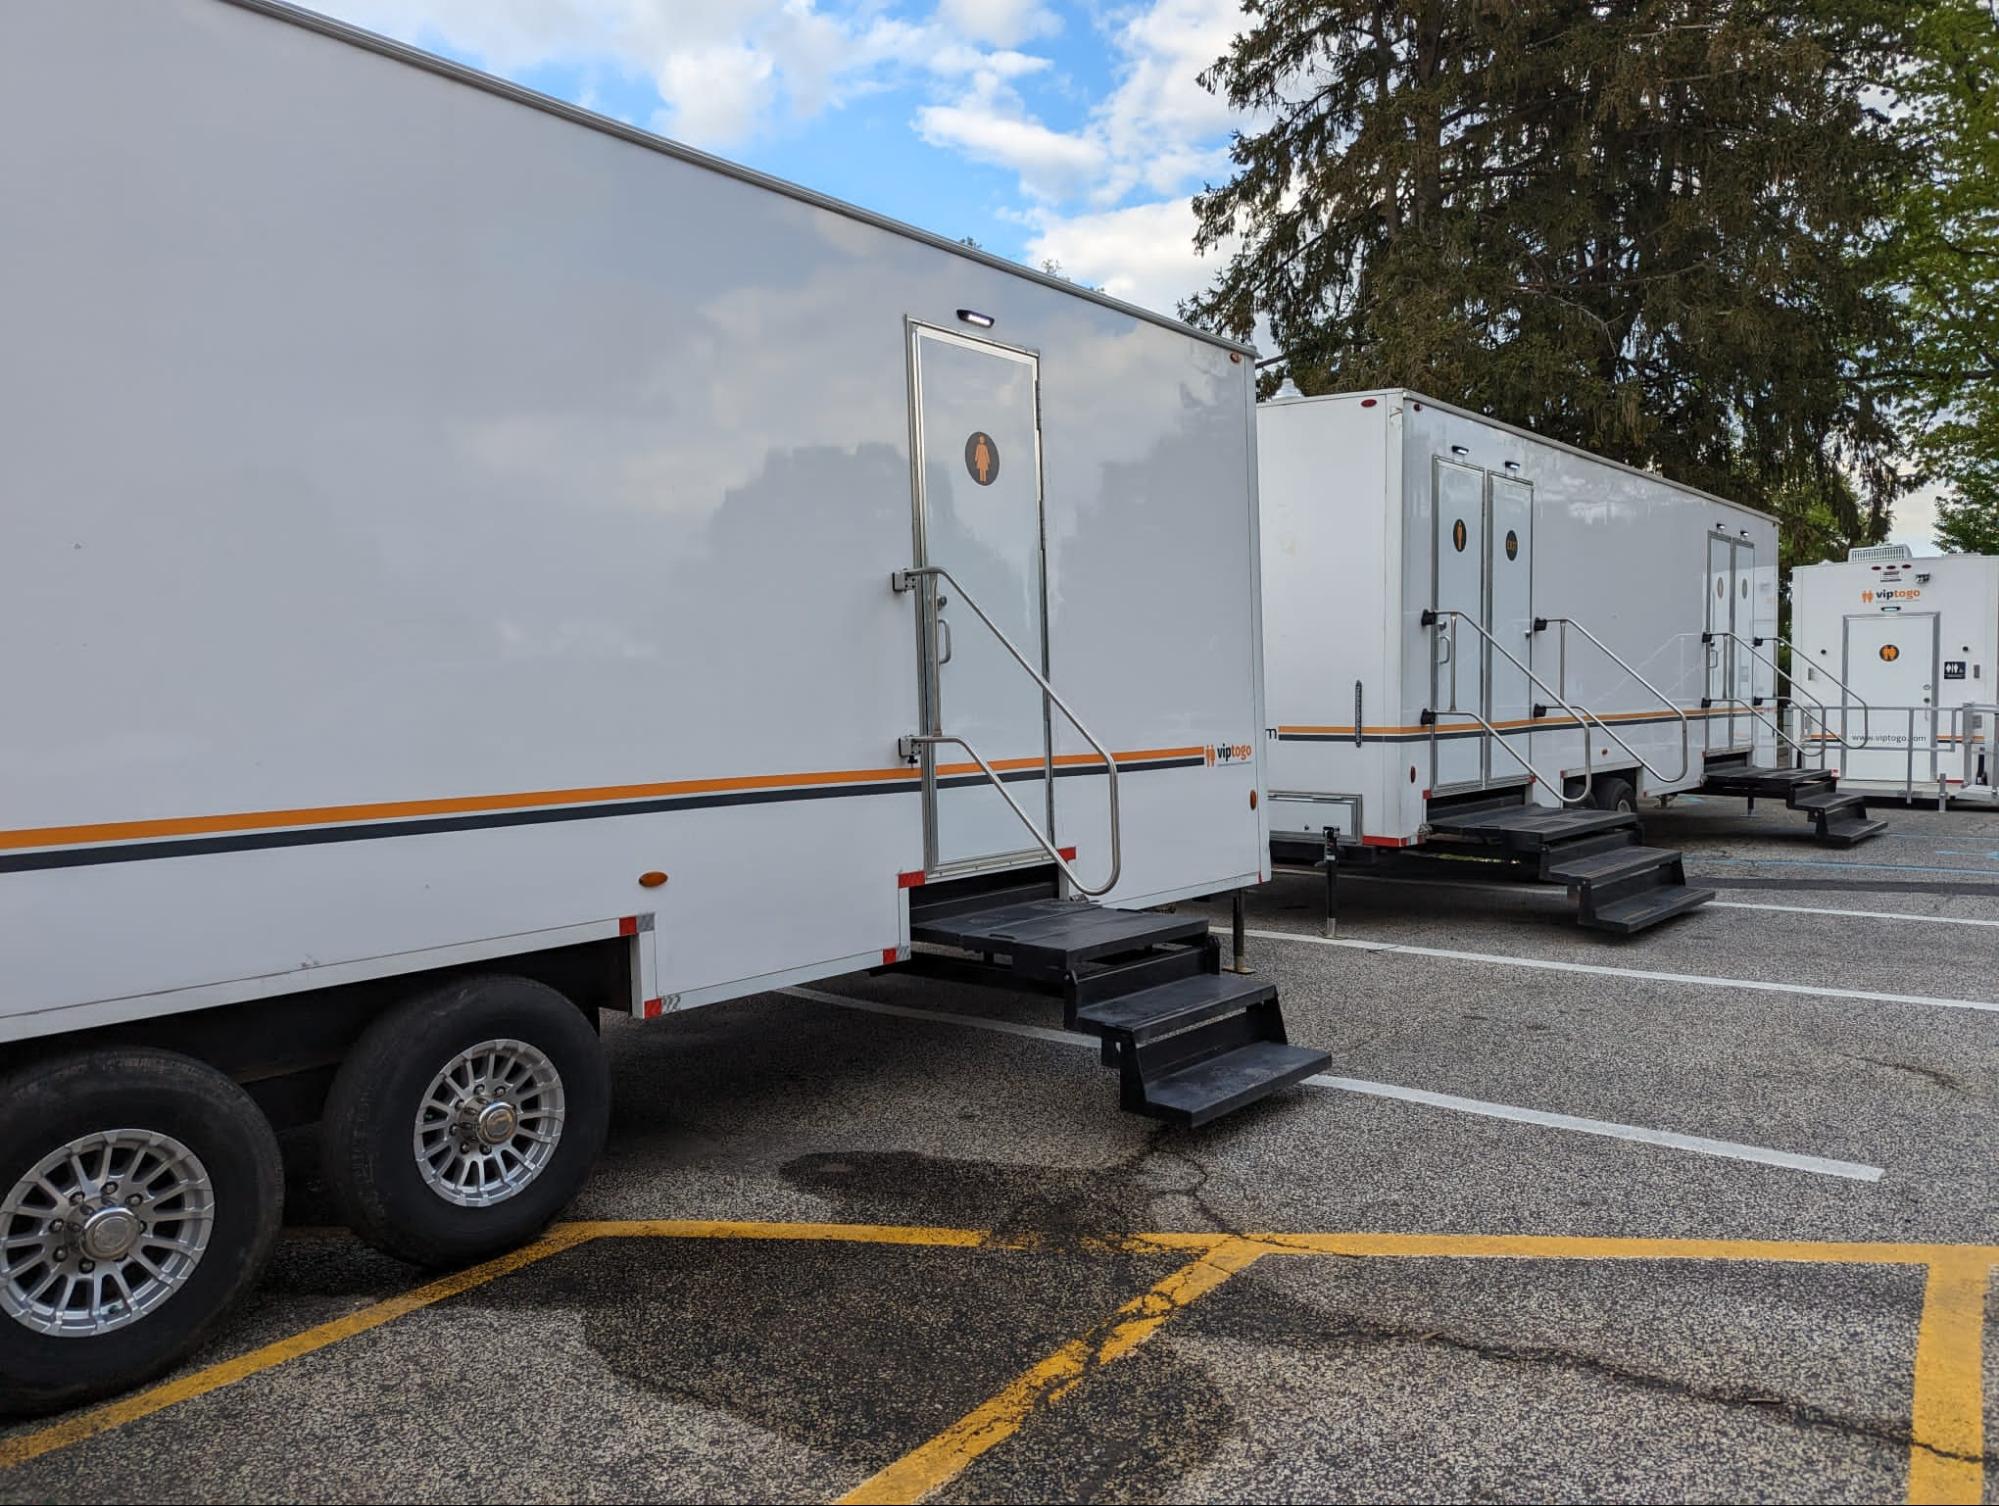 VIP restroom trailers